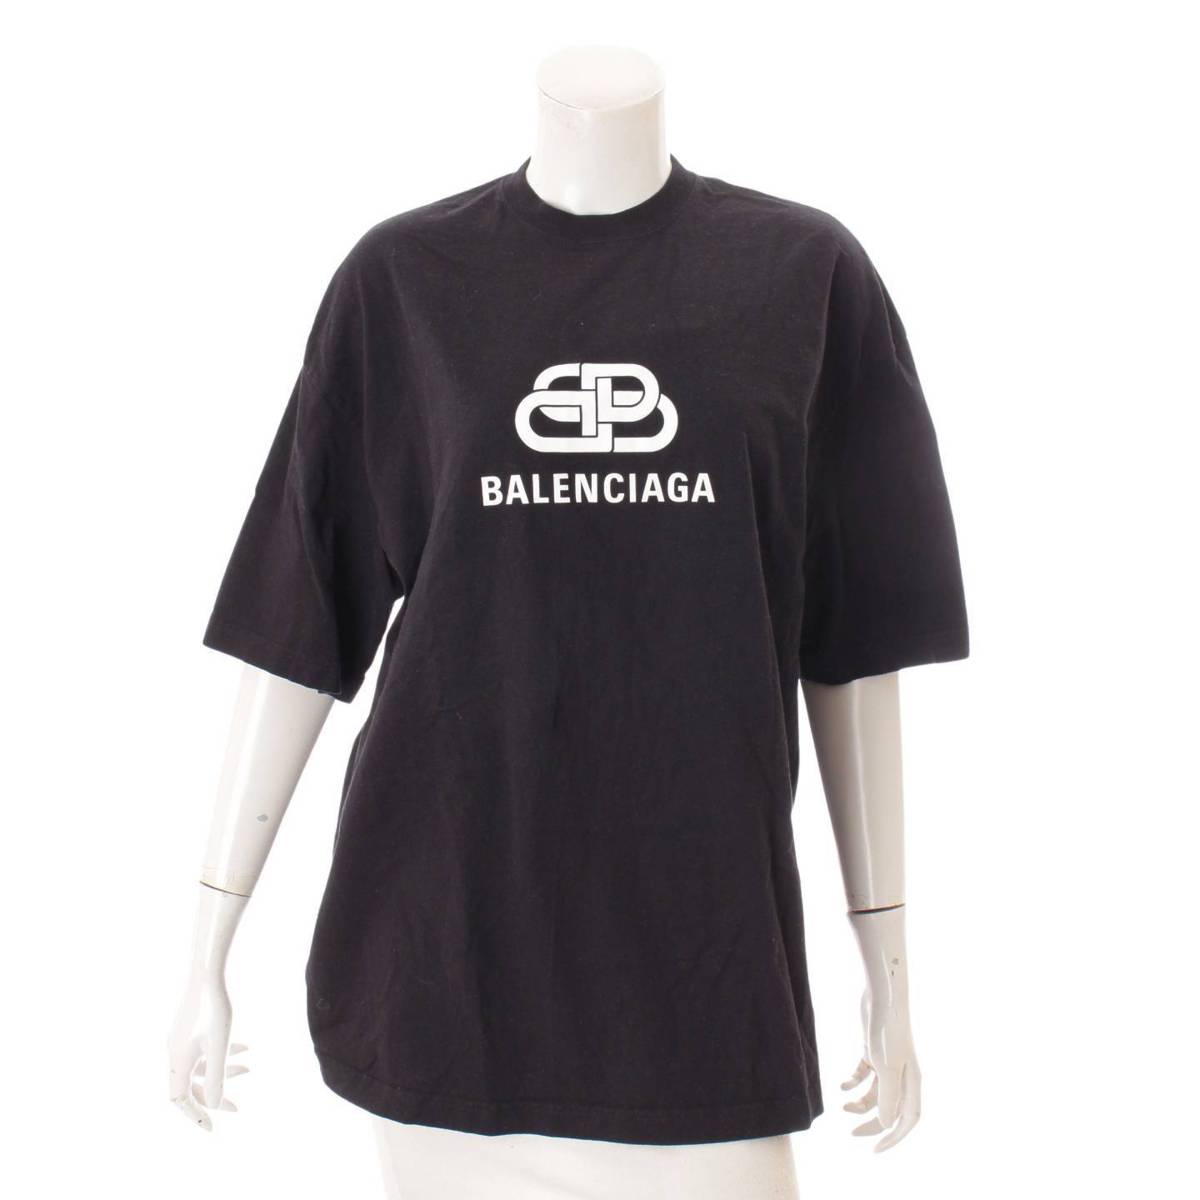 バレンシアガ(Balenciaga) ロゴTシャツ 570813 TEV48 1000 ブラック XS